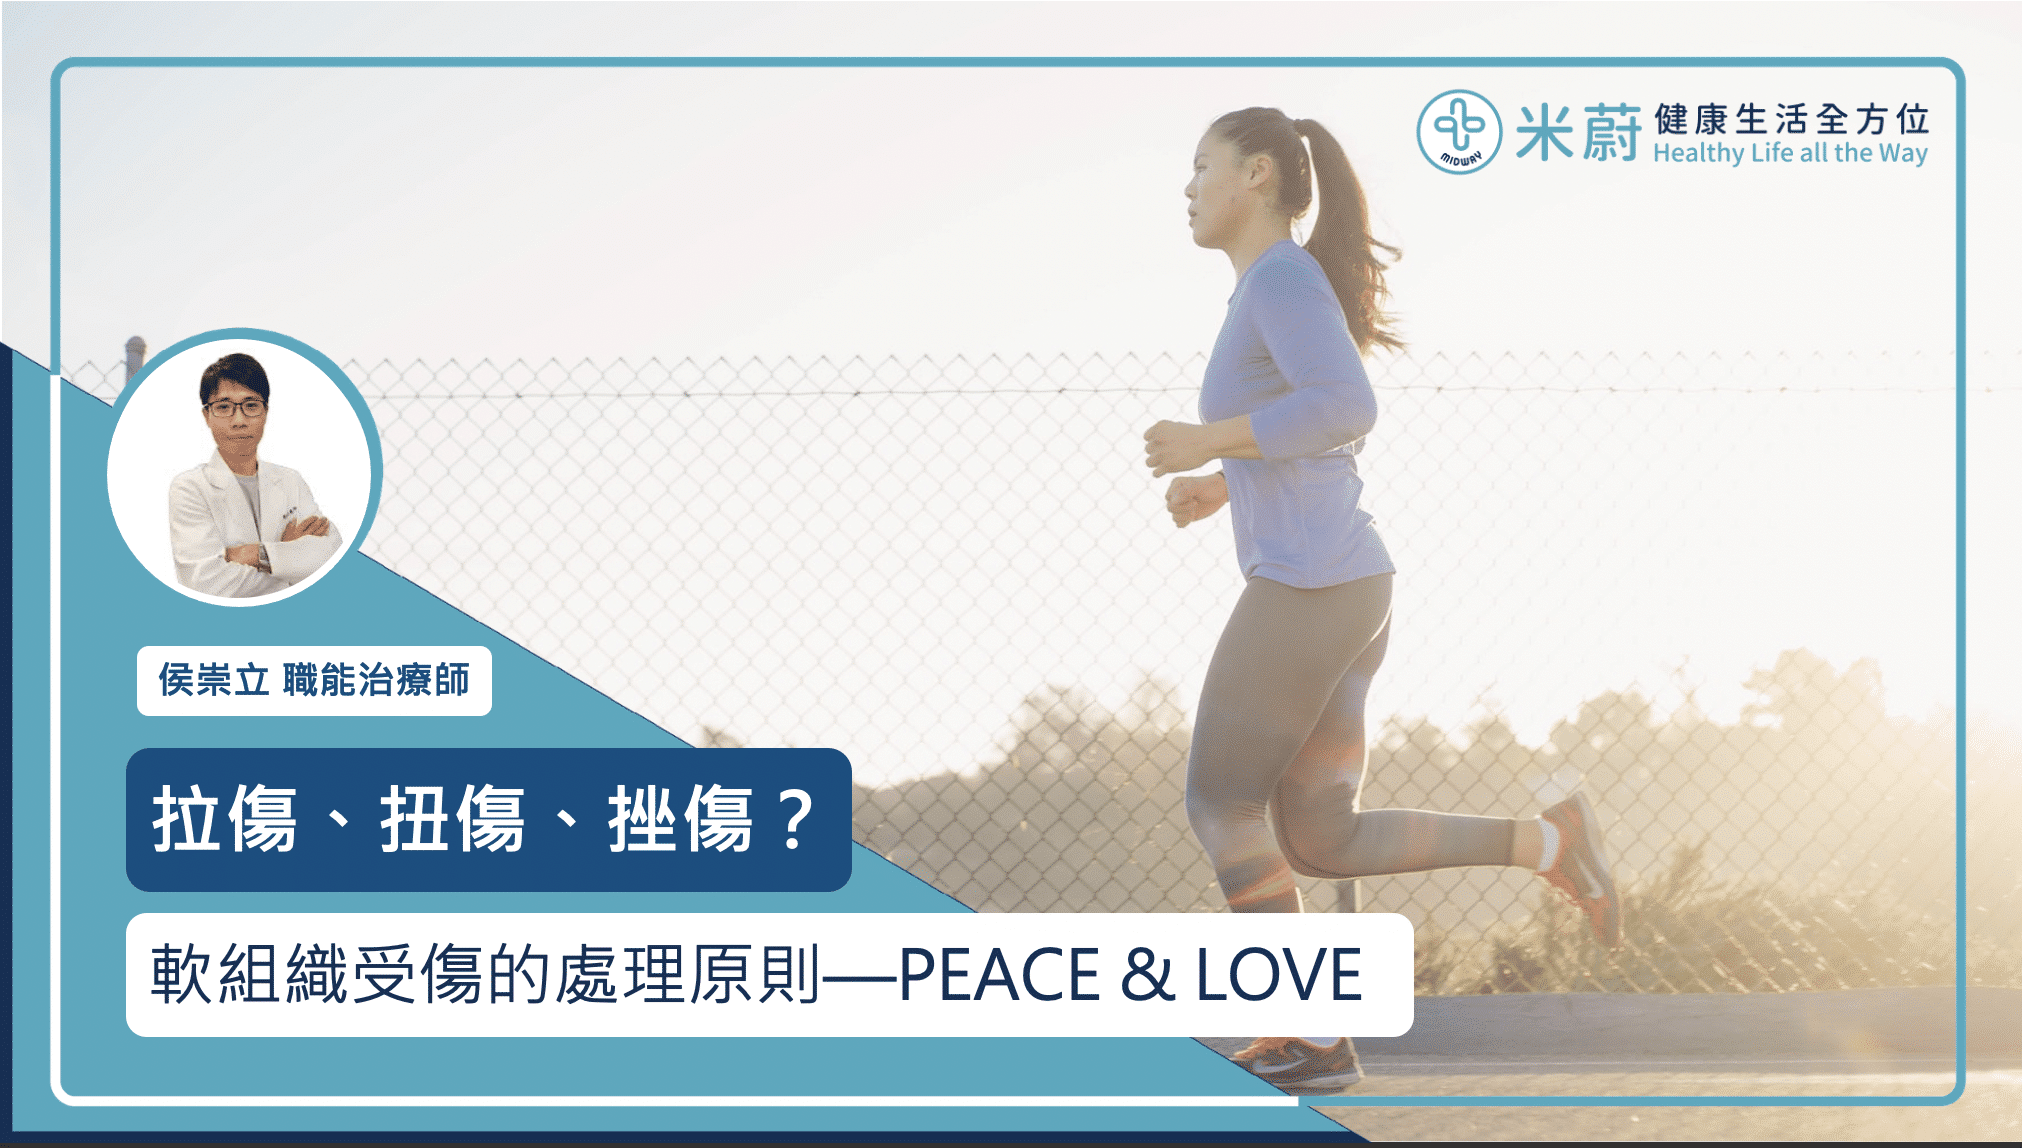 拉傷、扭傷、挫傷？運動時軟組織受傷的處理原則—PEACE & LOVE